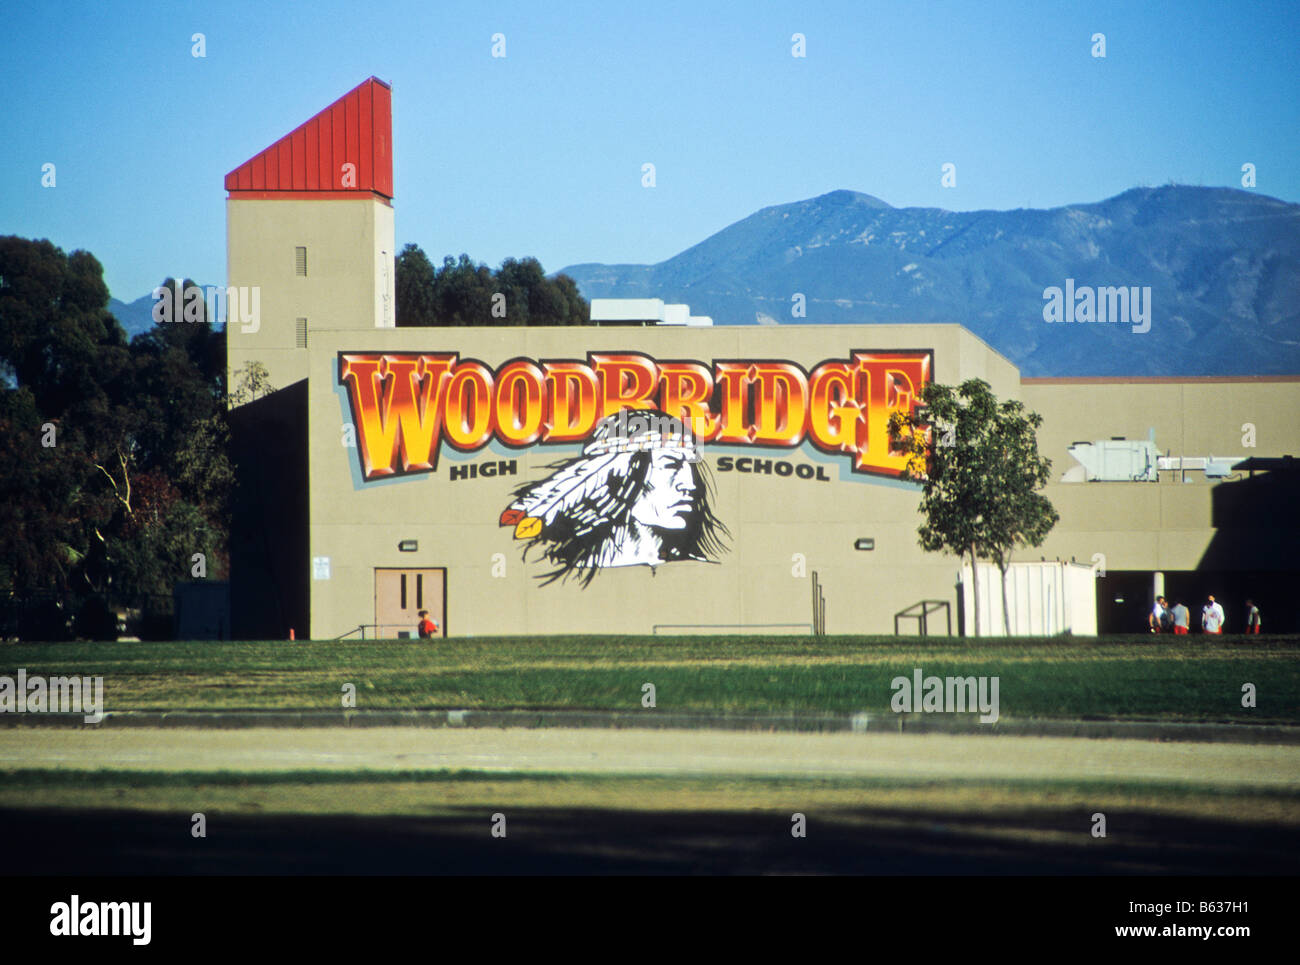 American Indian logo sur mur de la salle de sport de Woodbridge High School, Irvine, Californie, USA Banque D'Images